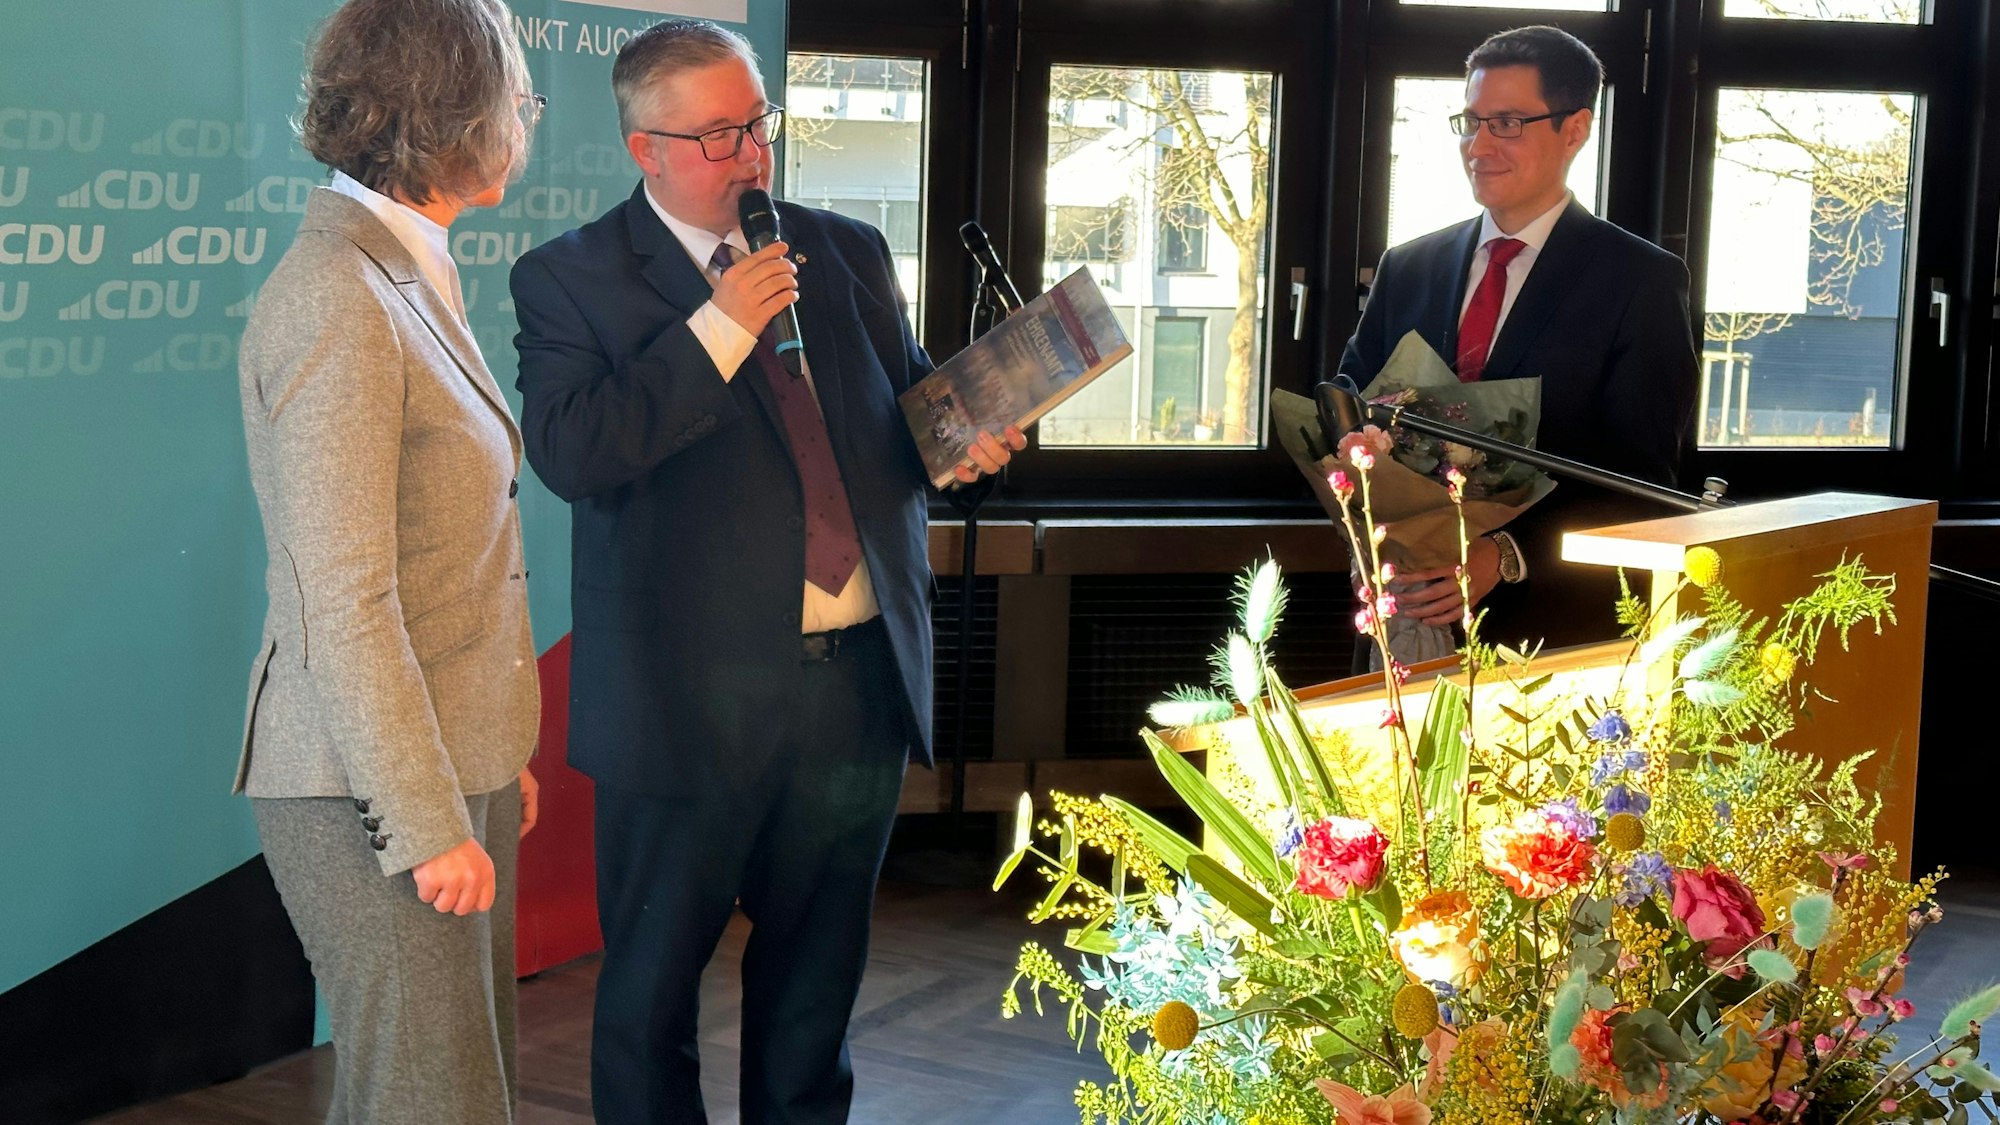 NRW-Ministerin Ina Scharrenbach bekam von Sascha Lienesch und Bürgermeister  Max Leitterstorf das Jahresheft des Kreises geschenkt. Im Vordergrund des Bildes ein bunter Blumenstrauß.